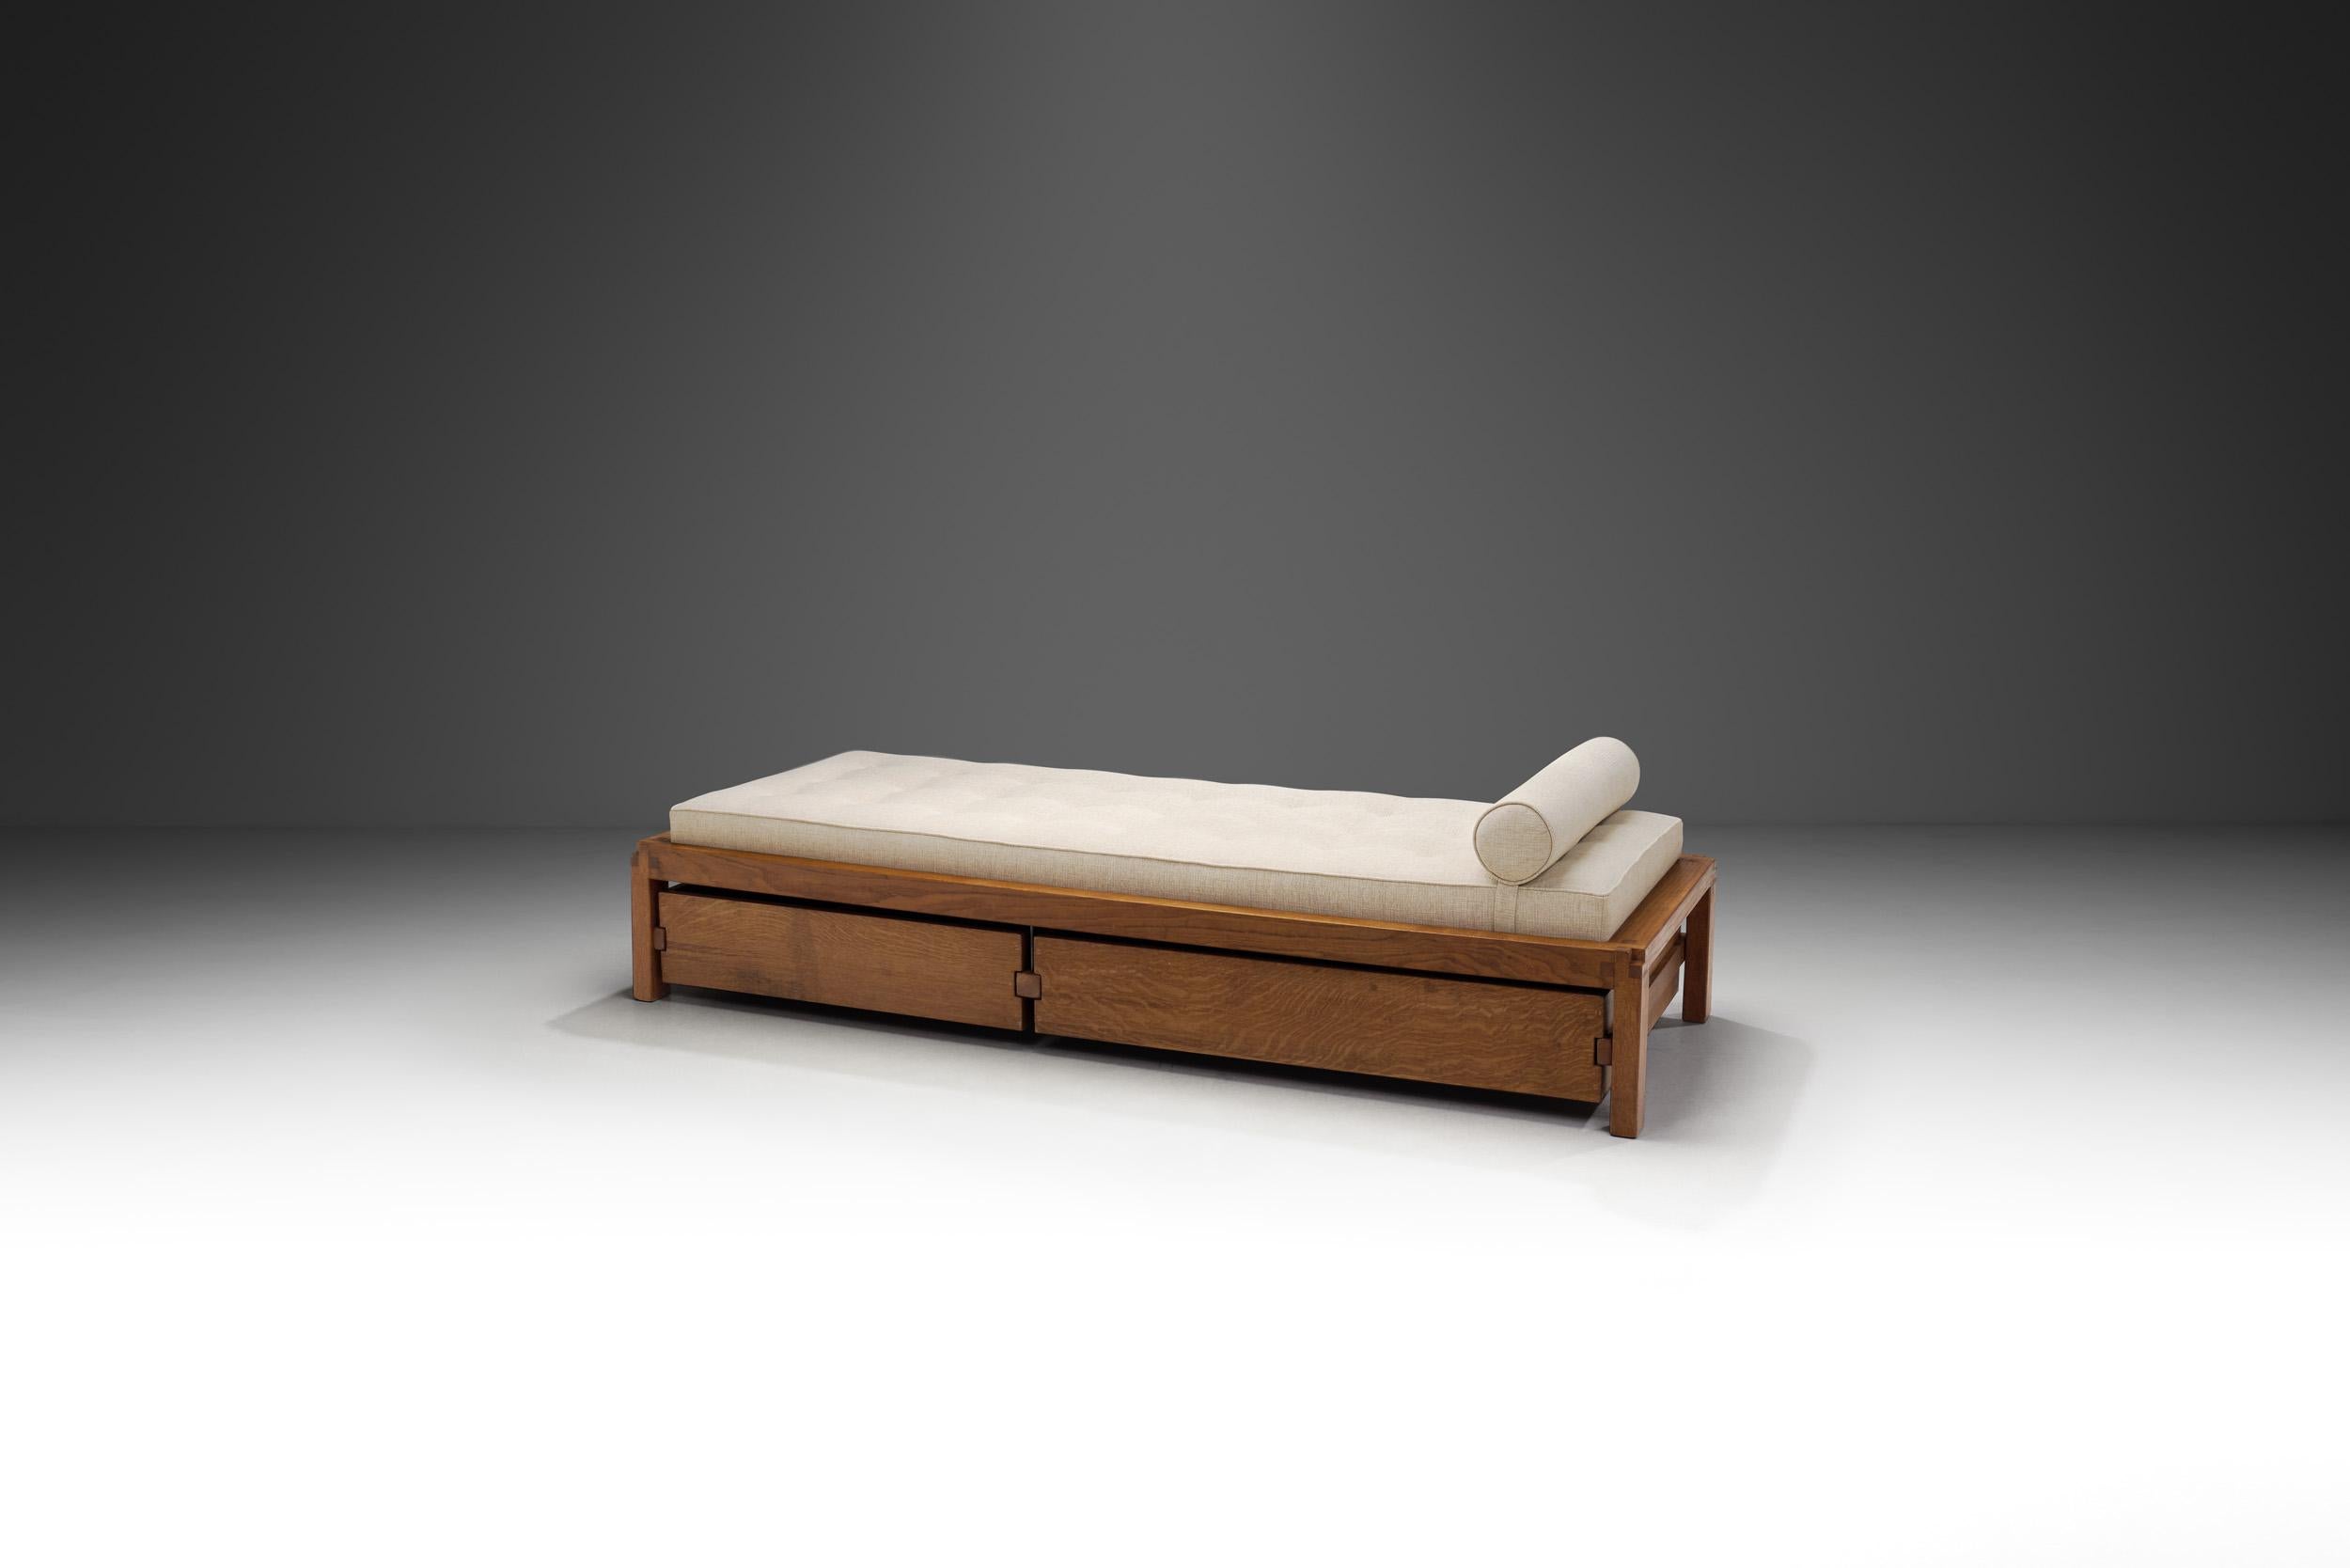 Wie alle Entwürfe von Chapo zeichnet sich auch dieses Bett durch die charakteristischen Holzverbindungen des Designers aus, die tadellos sind und von seiner Meisterschaft in der Holzbearbeitung zeugen. Dieses Daybed soll Ende der 1960er Jahre